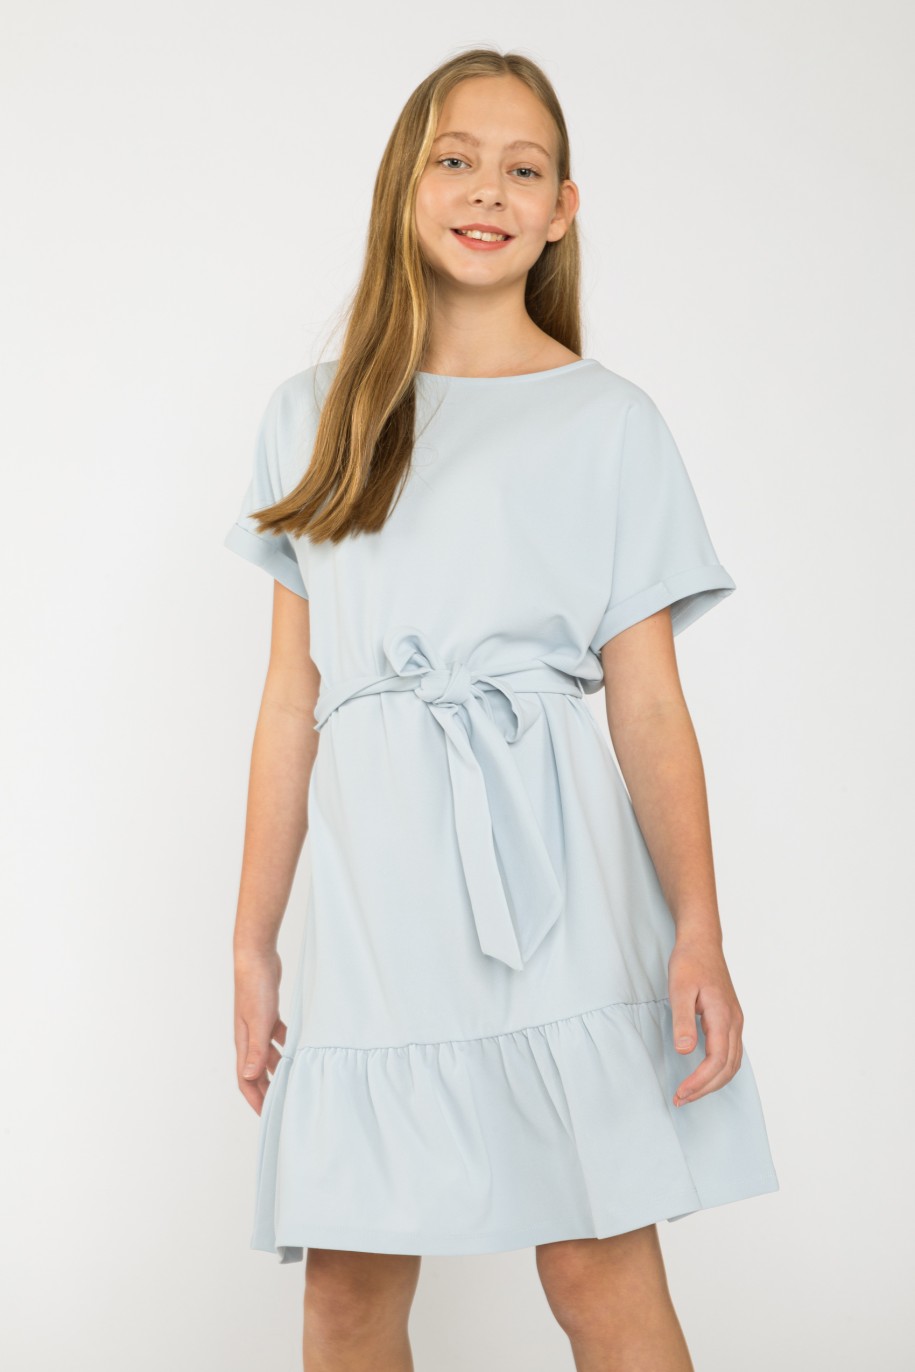 Błękitna sukienka z falbanką dla dziewczyny - 41635